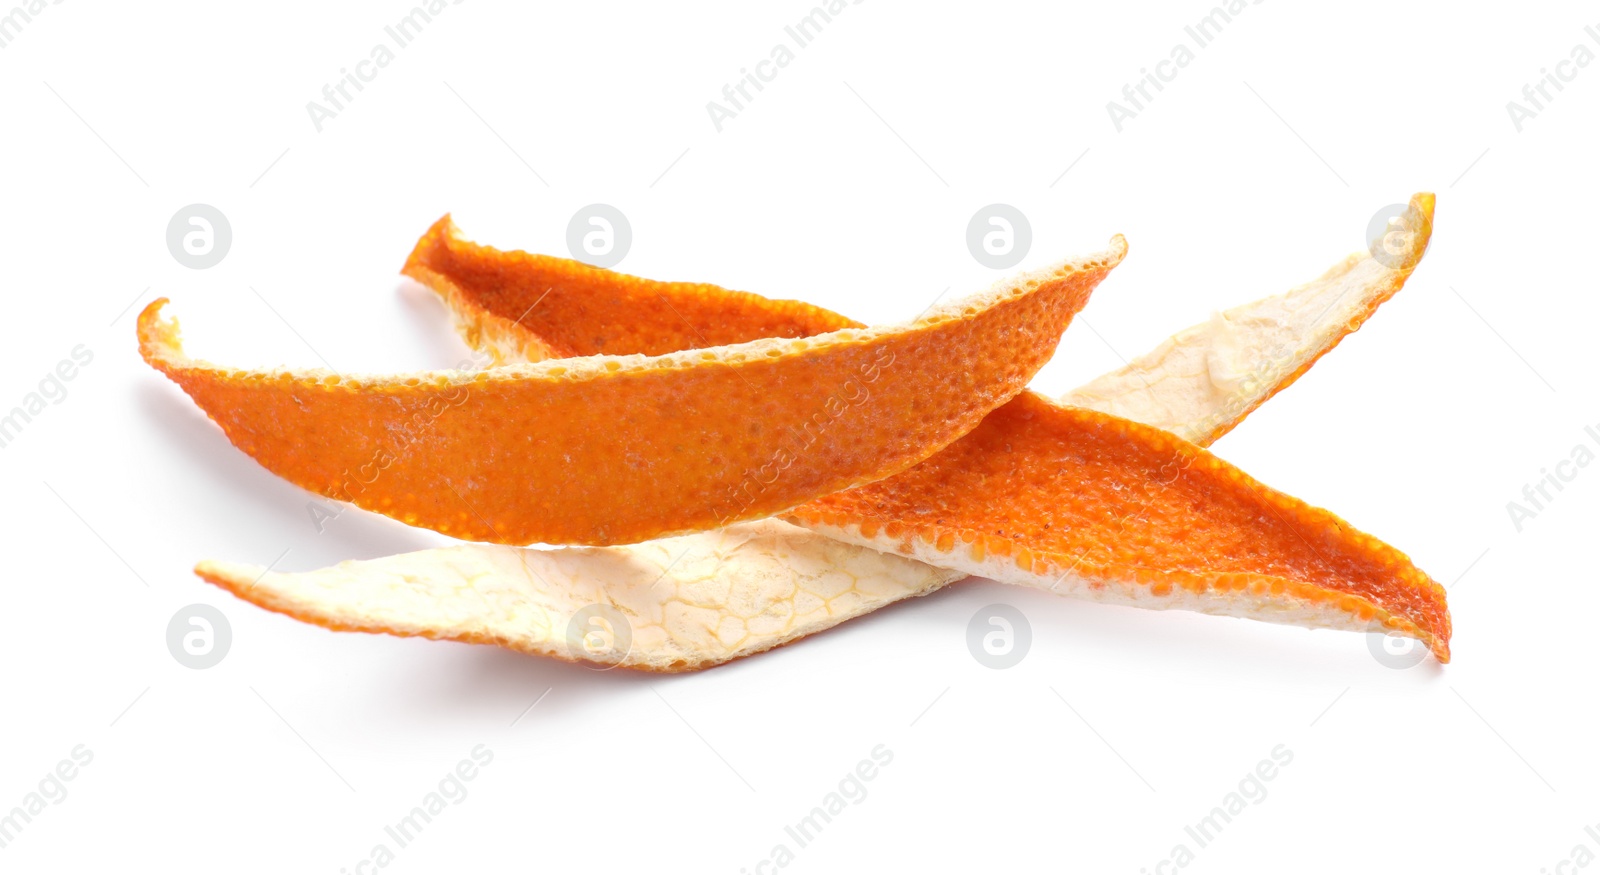 Photo of Dry orange fruit peels on white background